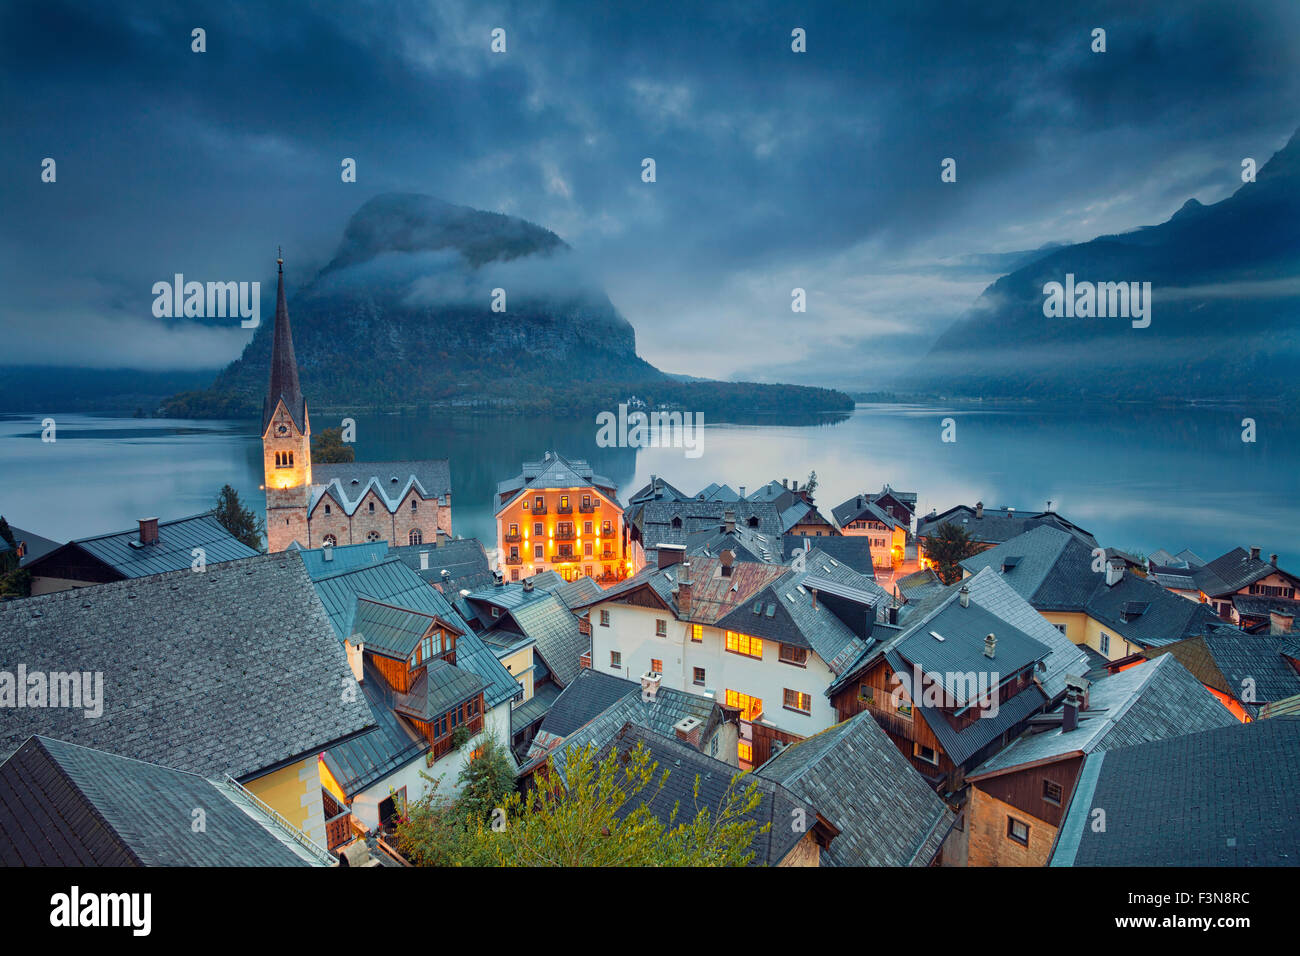 Hallstatt, Autriche. Image du célèbre village alpin Halstatt pendant le crépuscule heure bleue. Banque D'Images